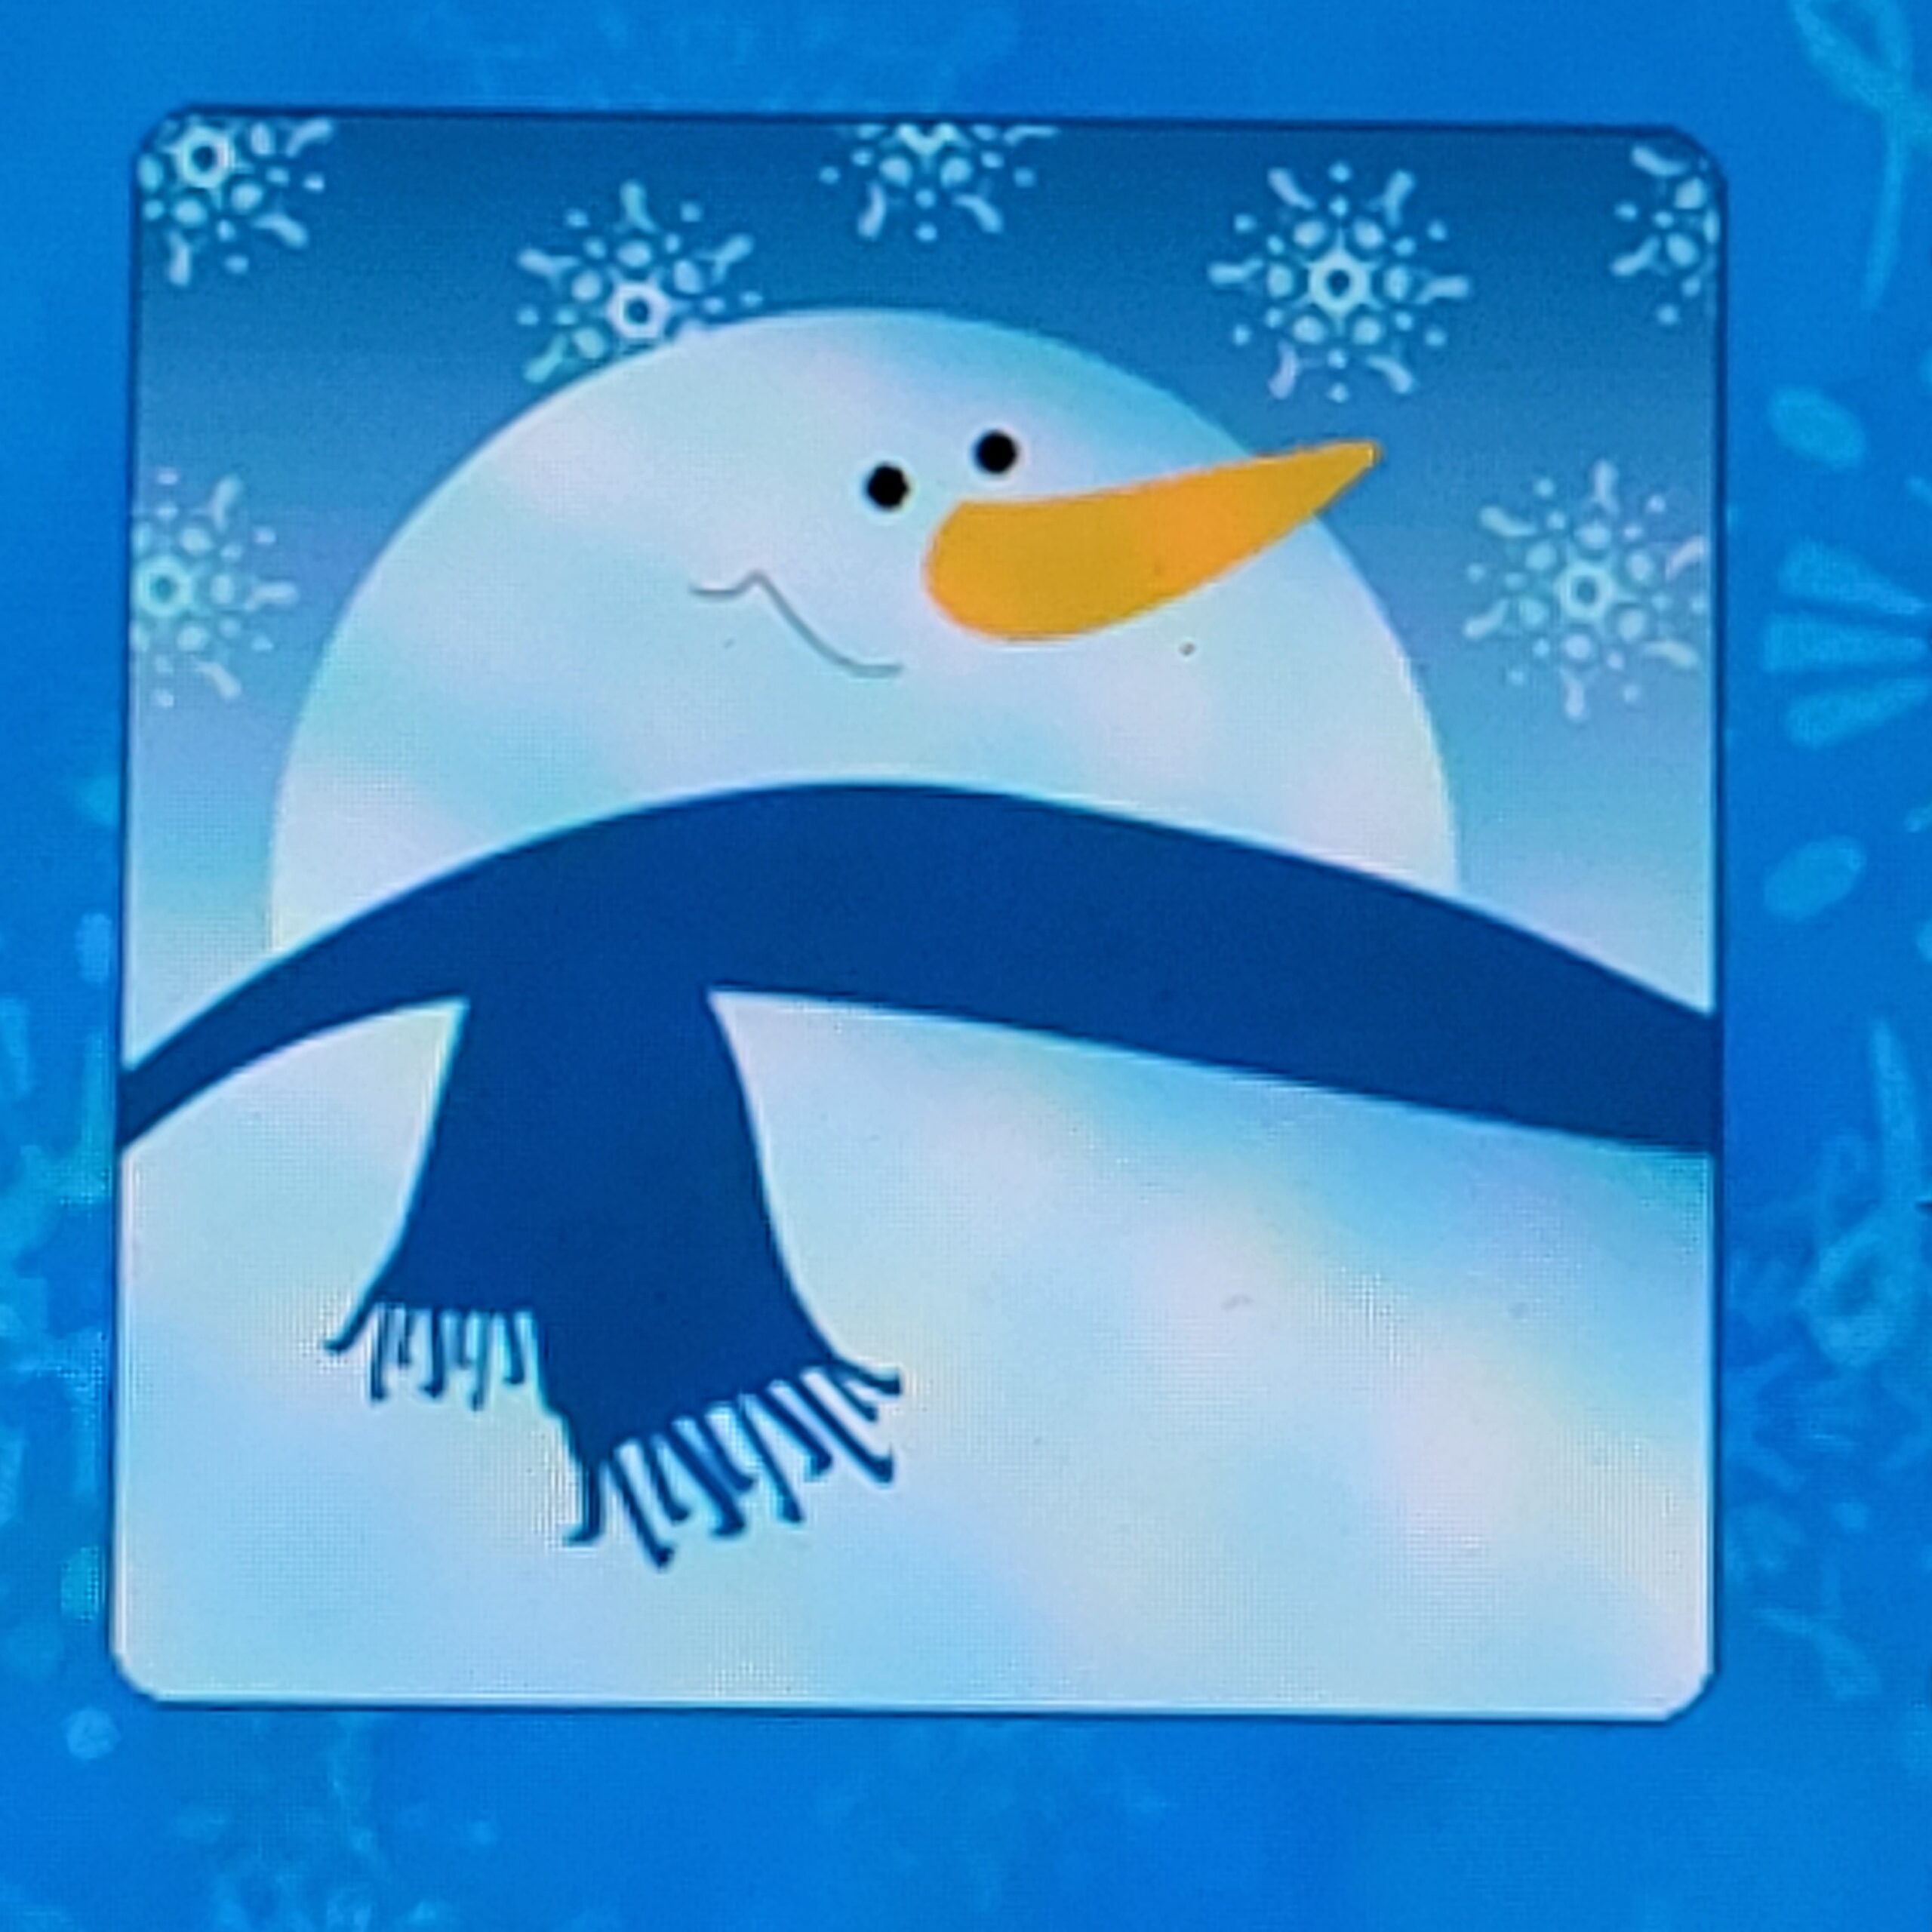 Sin texto. Borde azul y blanco con Snowperson en el centro. El muñeco de nieve tiene una bufanda azul con flecos alrededor del cuello, una sonrisa, ojos pequeños negros y una nariz de zanahoria naranja. Cielo azul de fondo con copos de nieve.